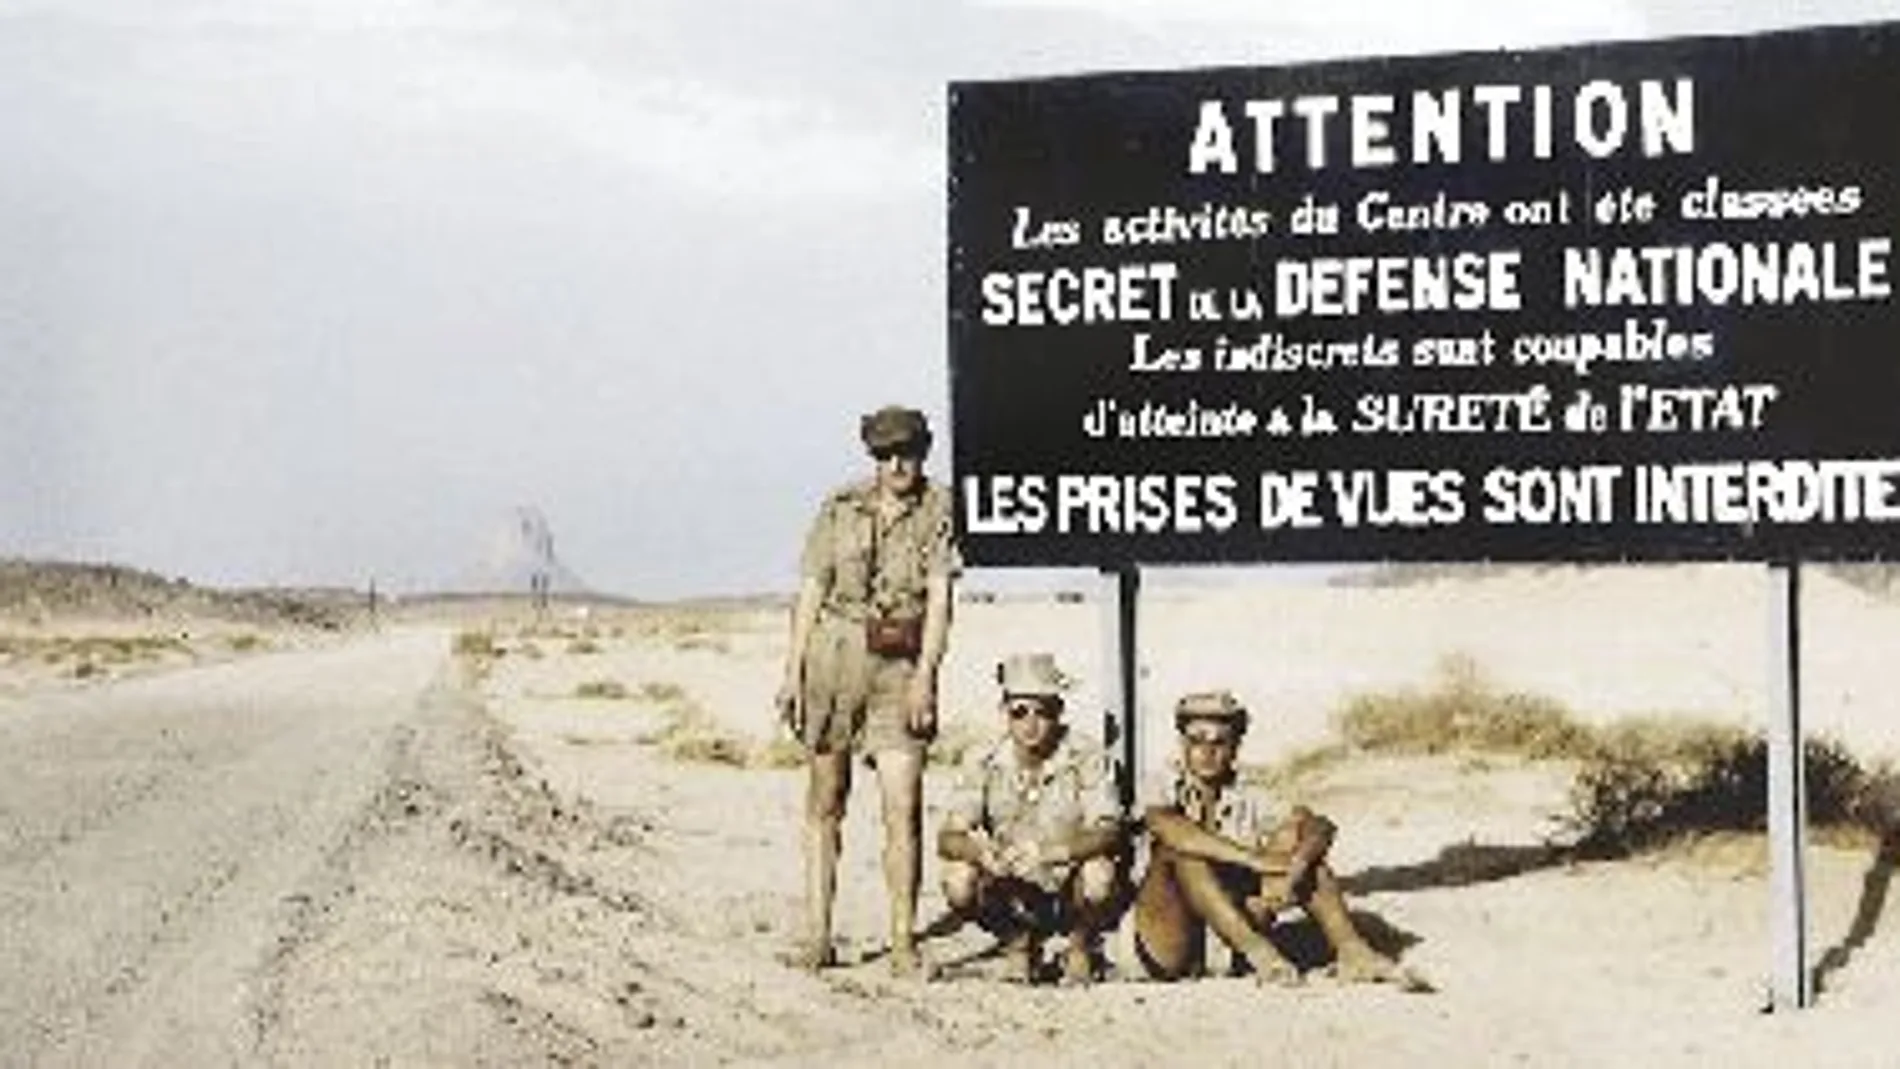 Pierre Leroy, junto otros compañeros, ante el cartel que prohibe el paso y realizar fotografías en zona de pruebas atómicas en el Sáhara argelino